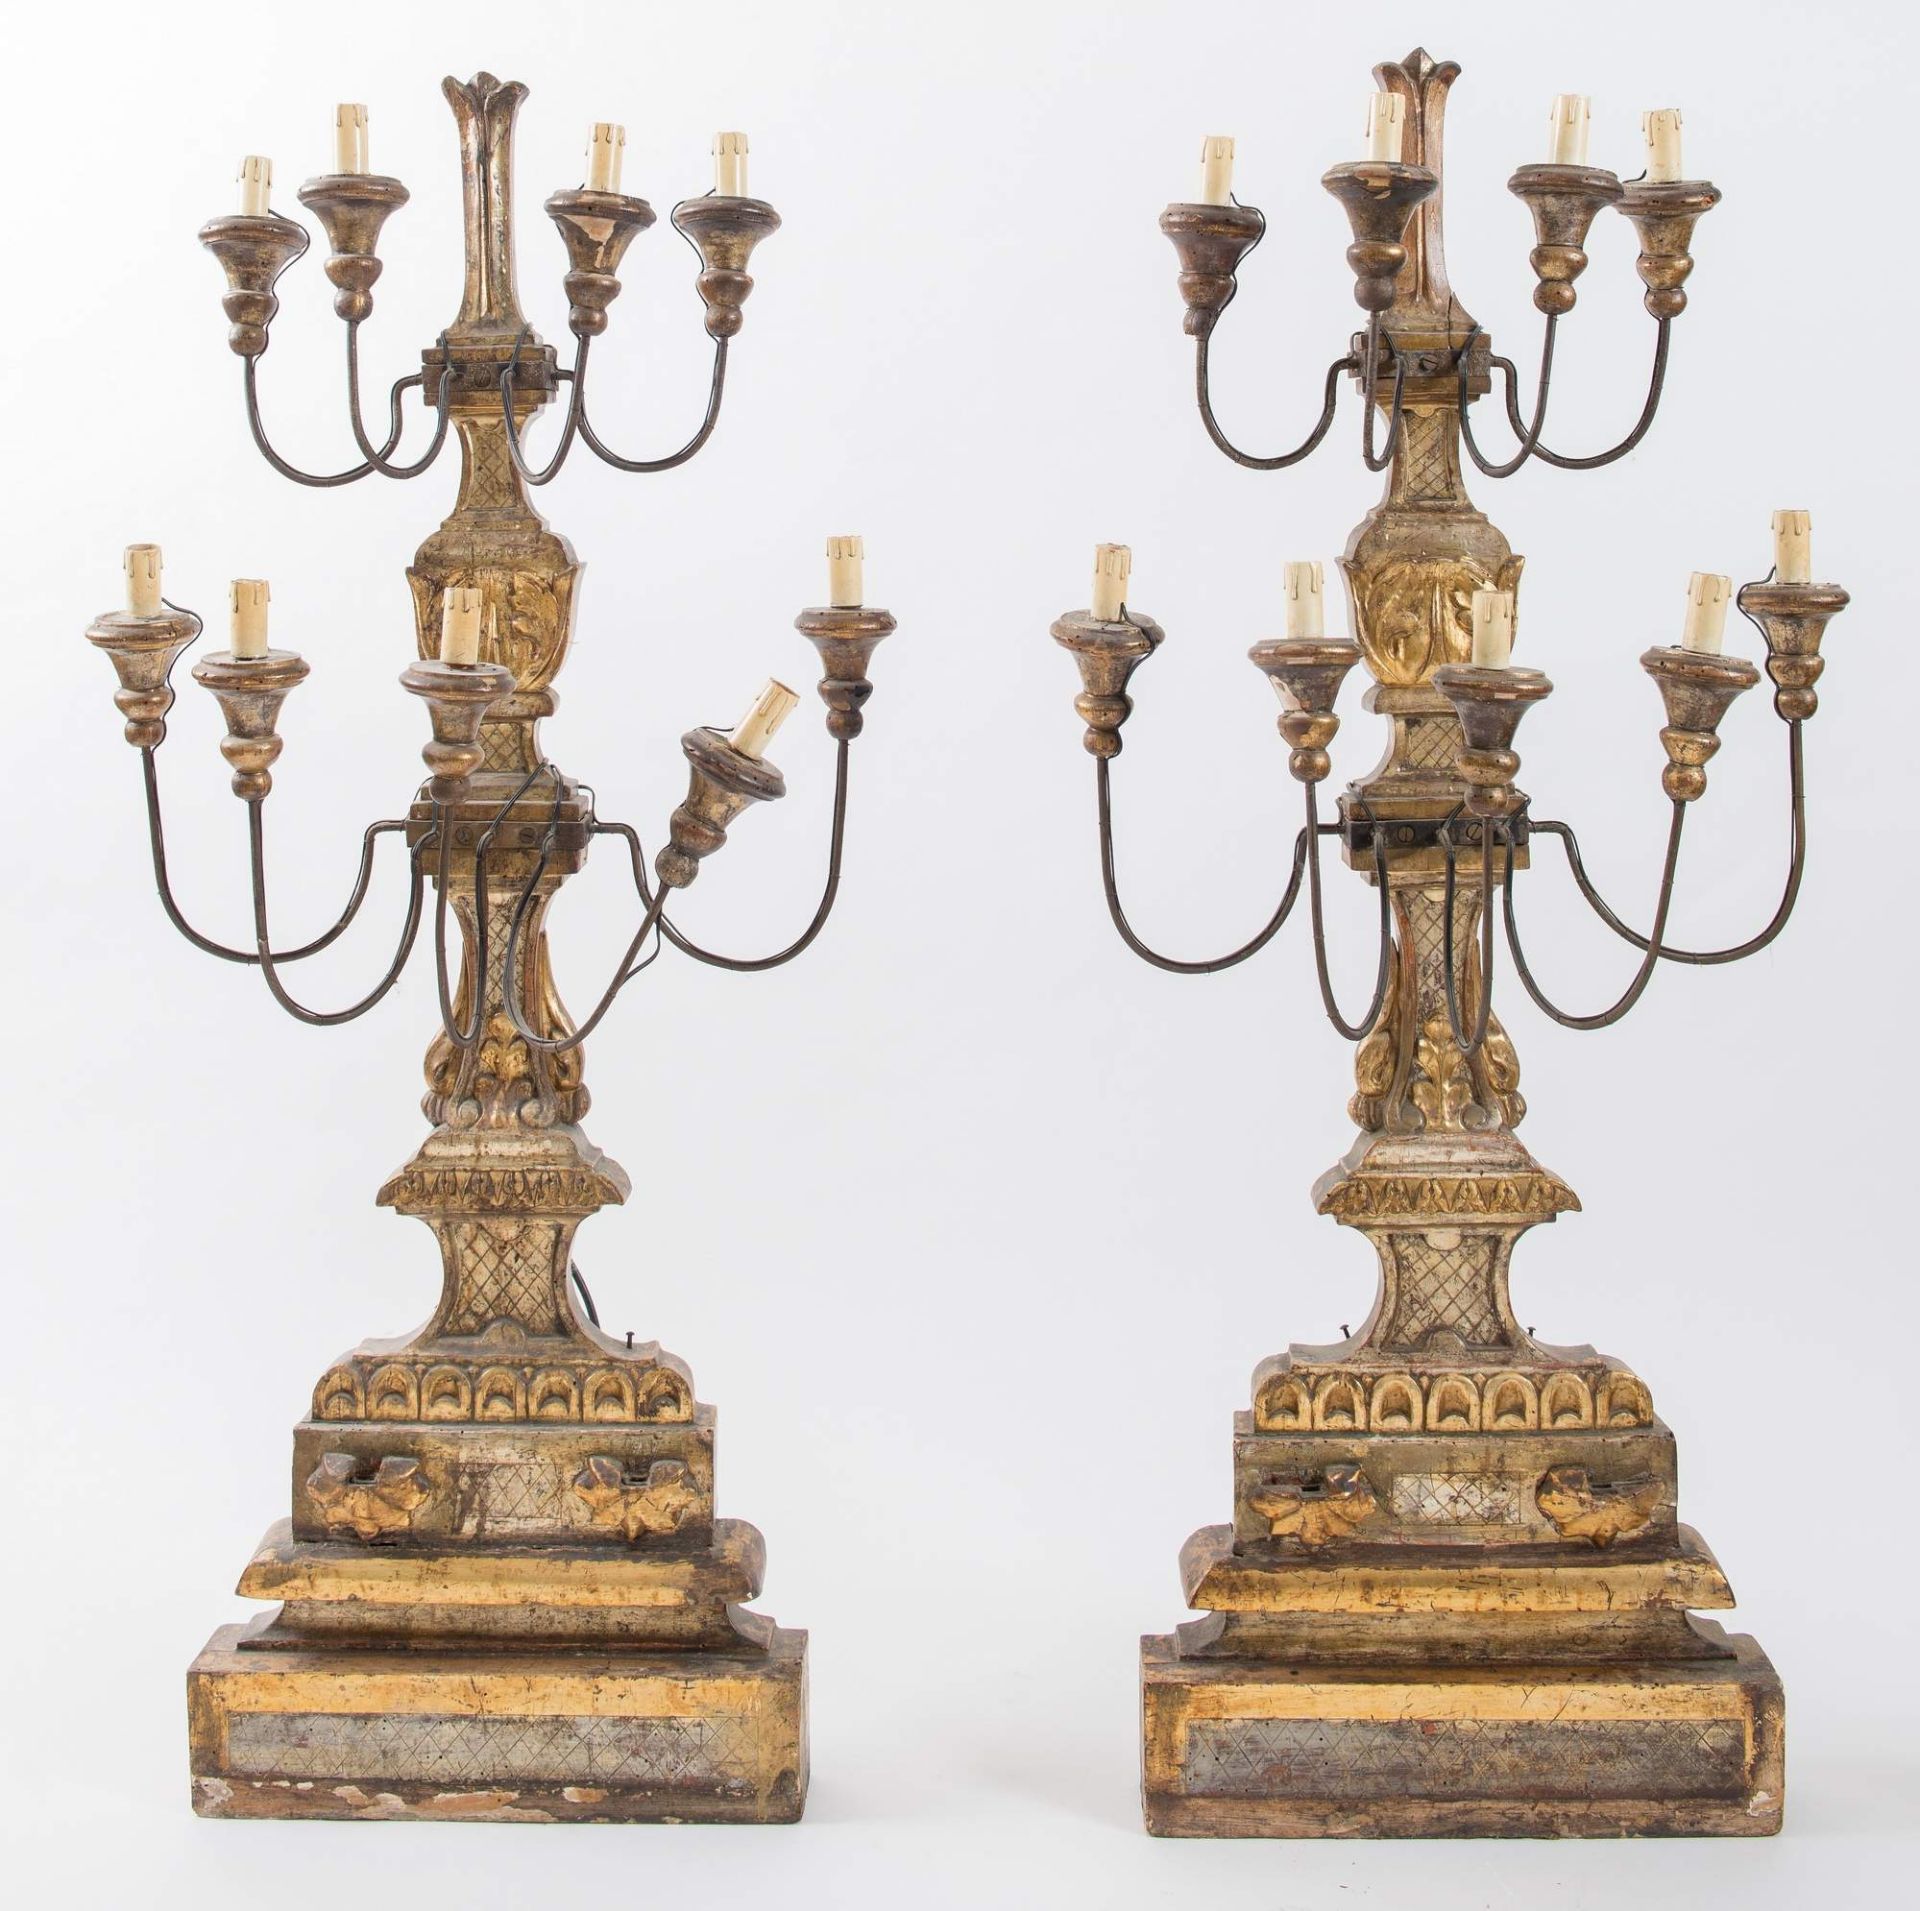 Coppia di grandi candelabri in legno intagliato e dorato. Toscana, ultimo quarto del XVIII secolo. - Image 2 of 3